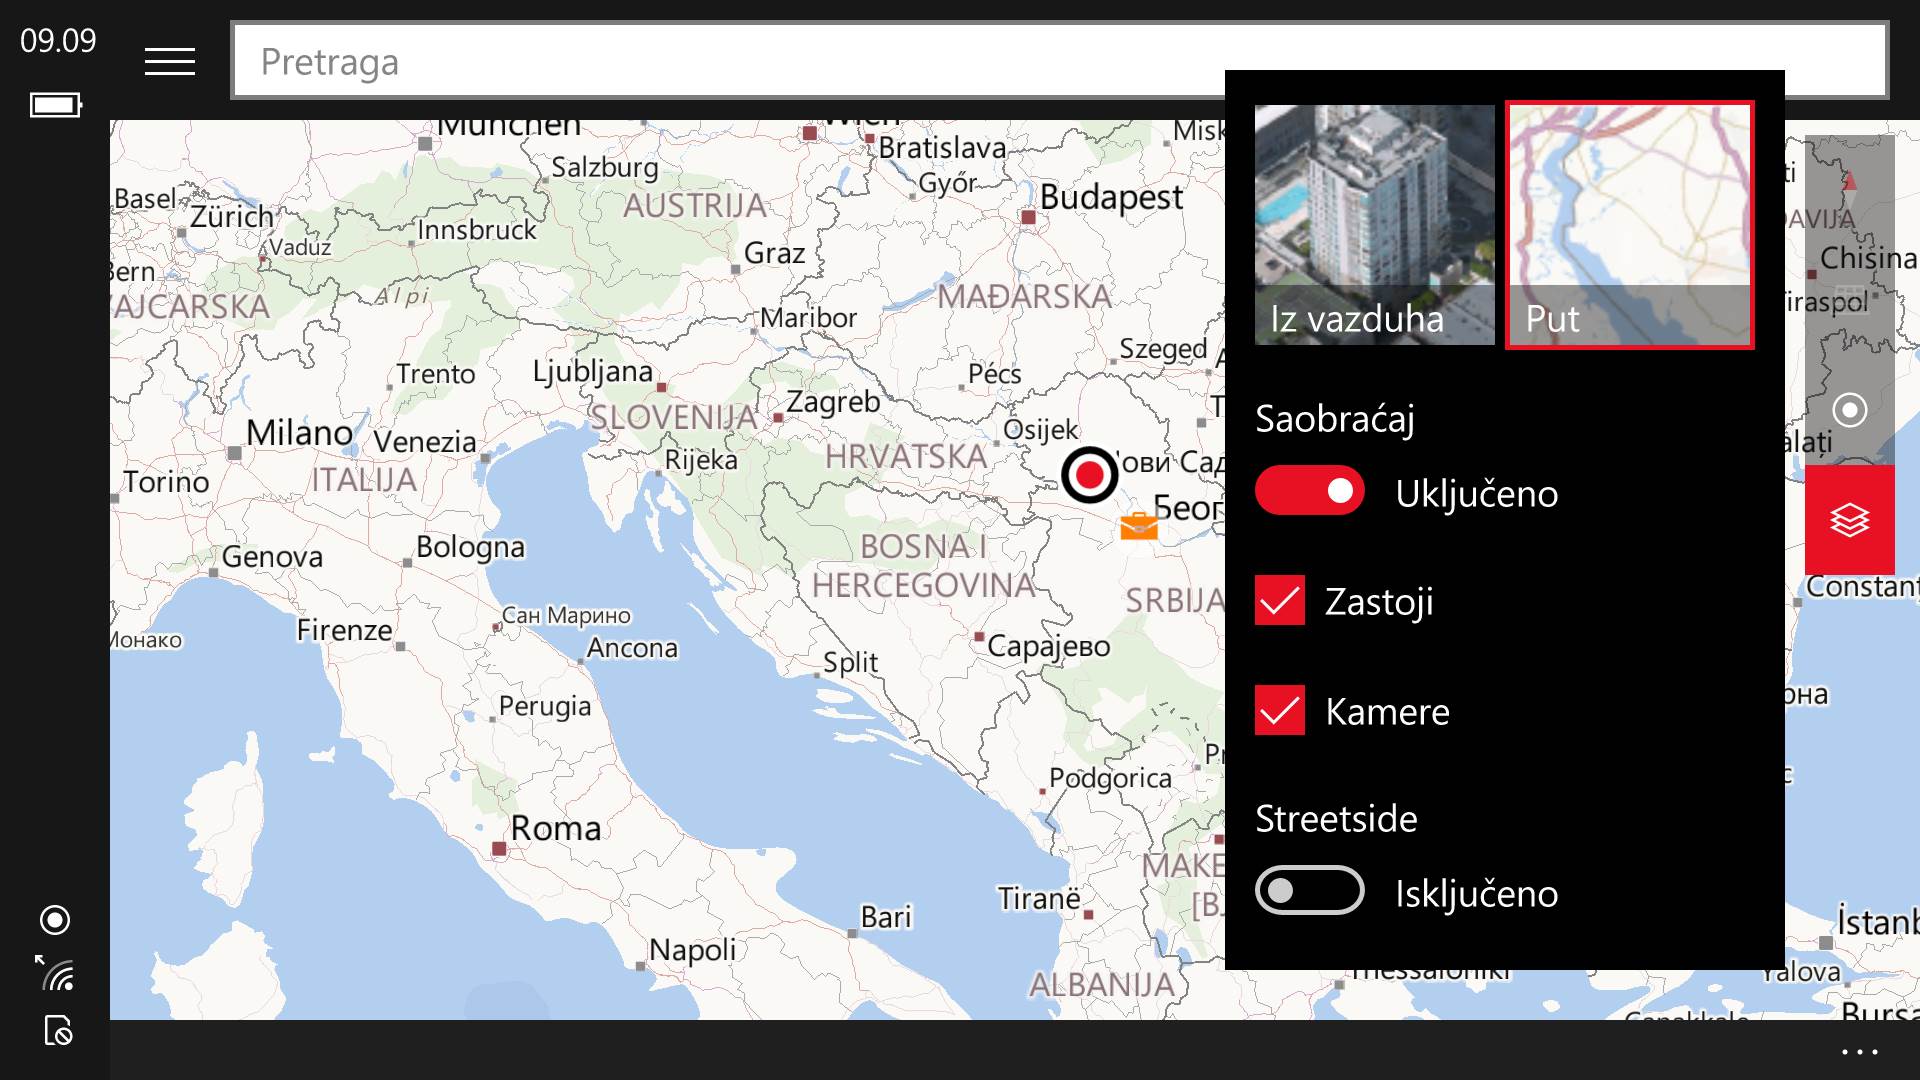 navigacija srbija mapa Here navigacija i mape na Windows i Microsoft uređajima | Mondo Portal navigacija srbija mapa